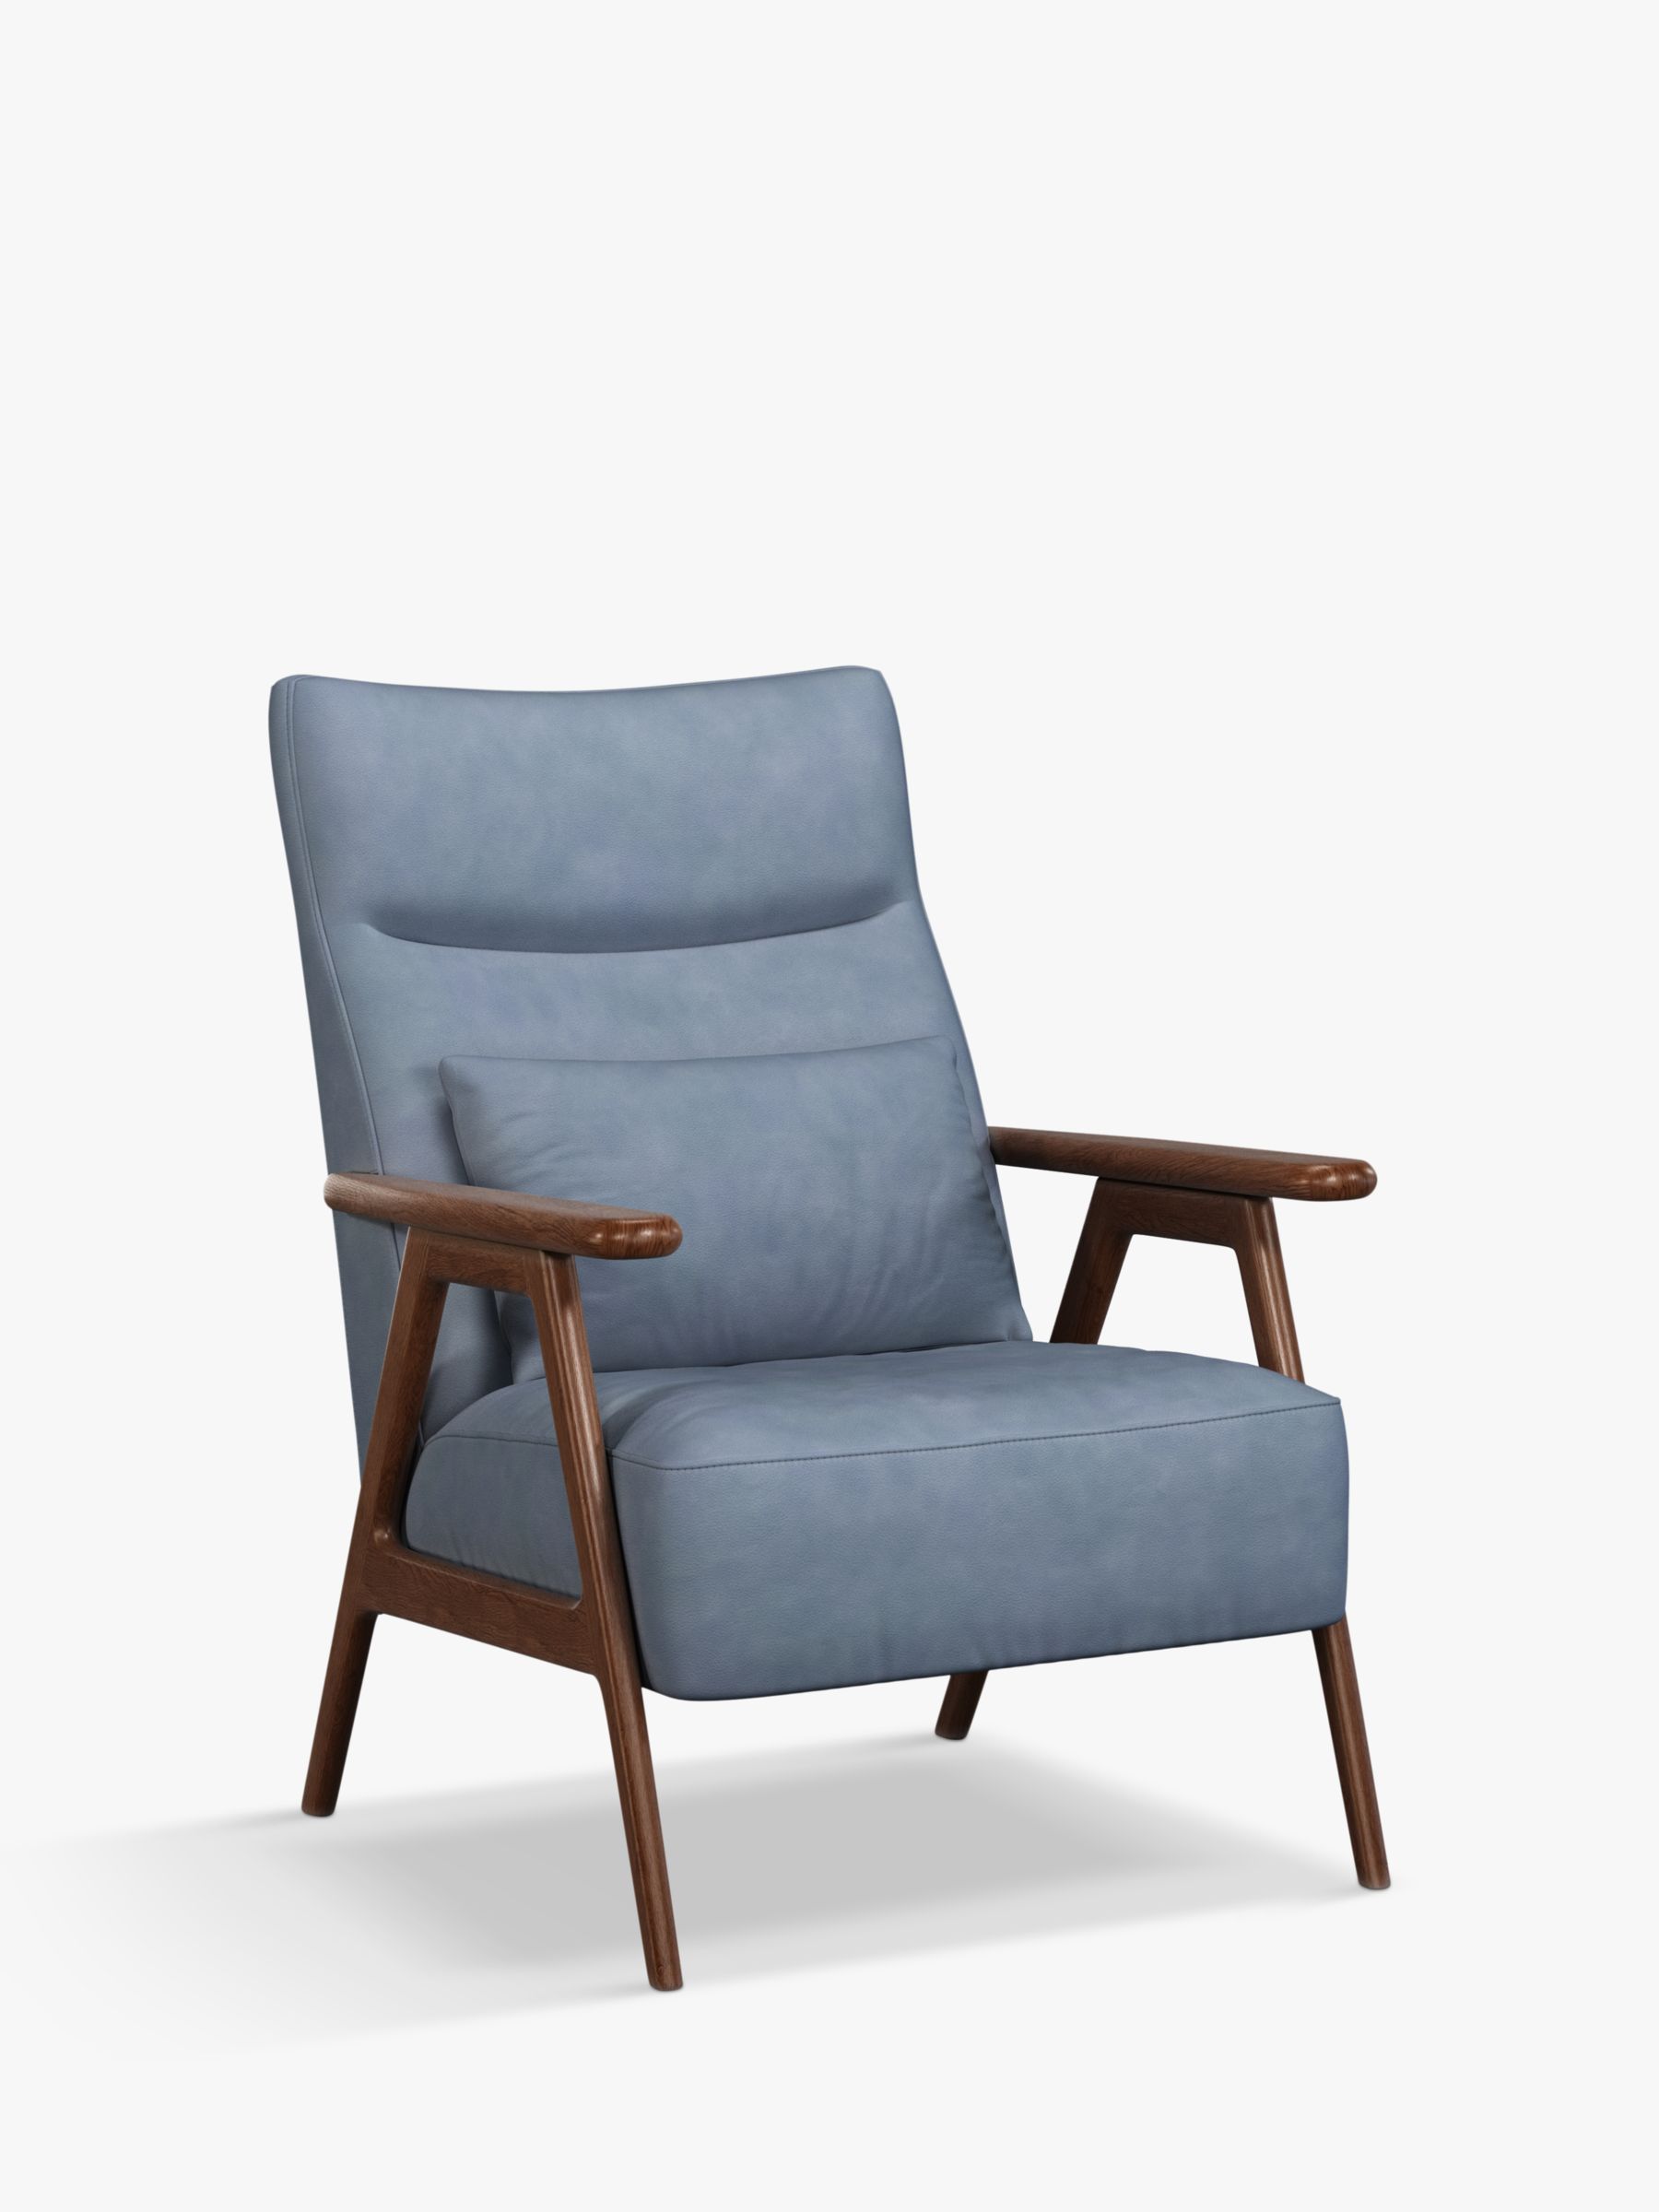 Hendricks Range, John Lewis Hendricks High Back Leather Accent Chair, Dark Leg, Soft Touch Blue